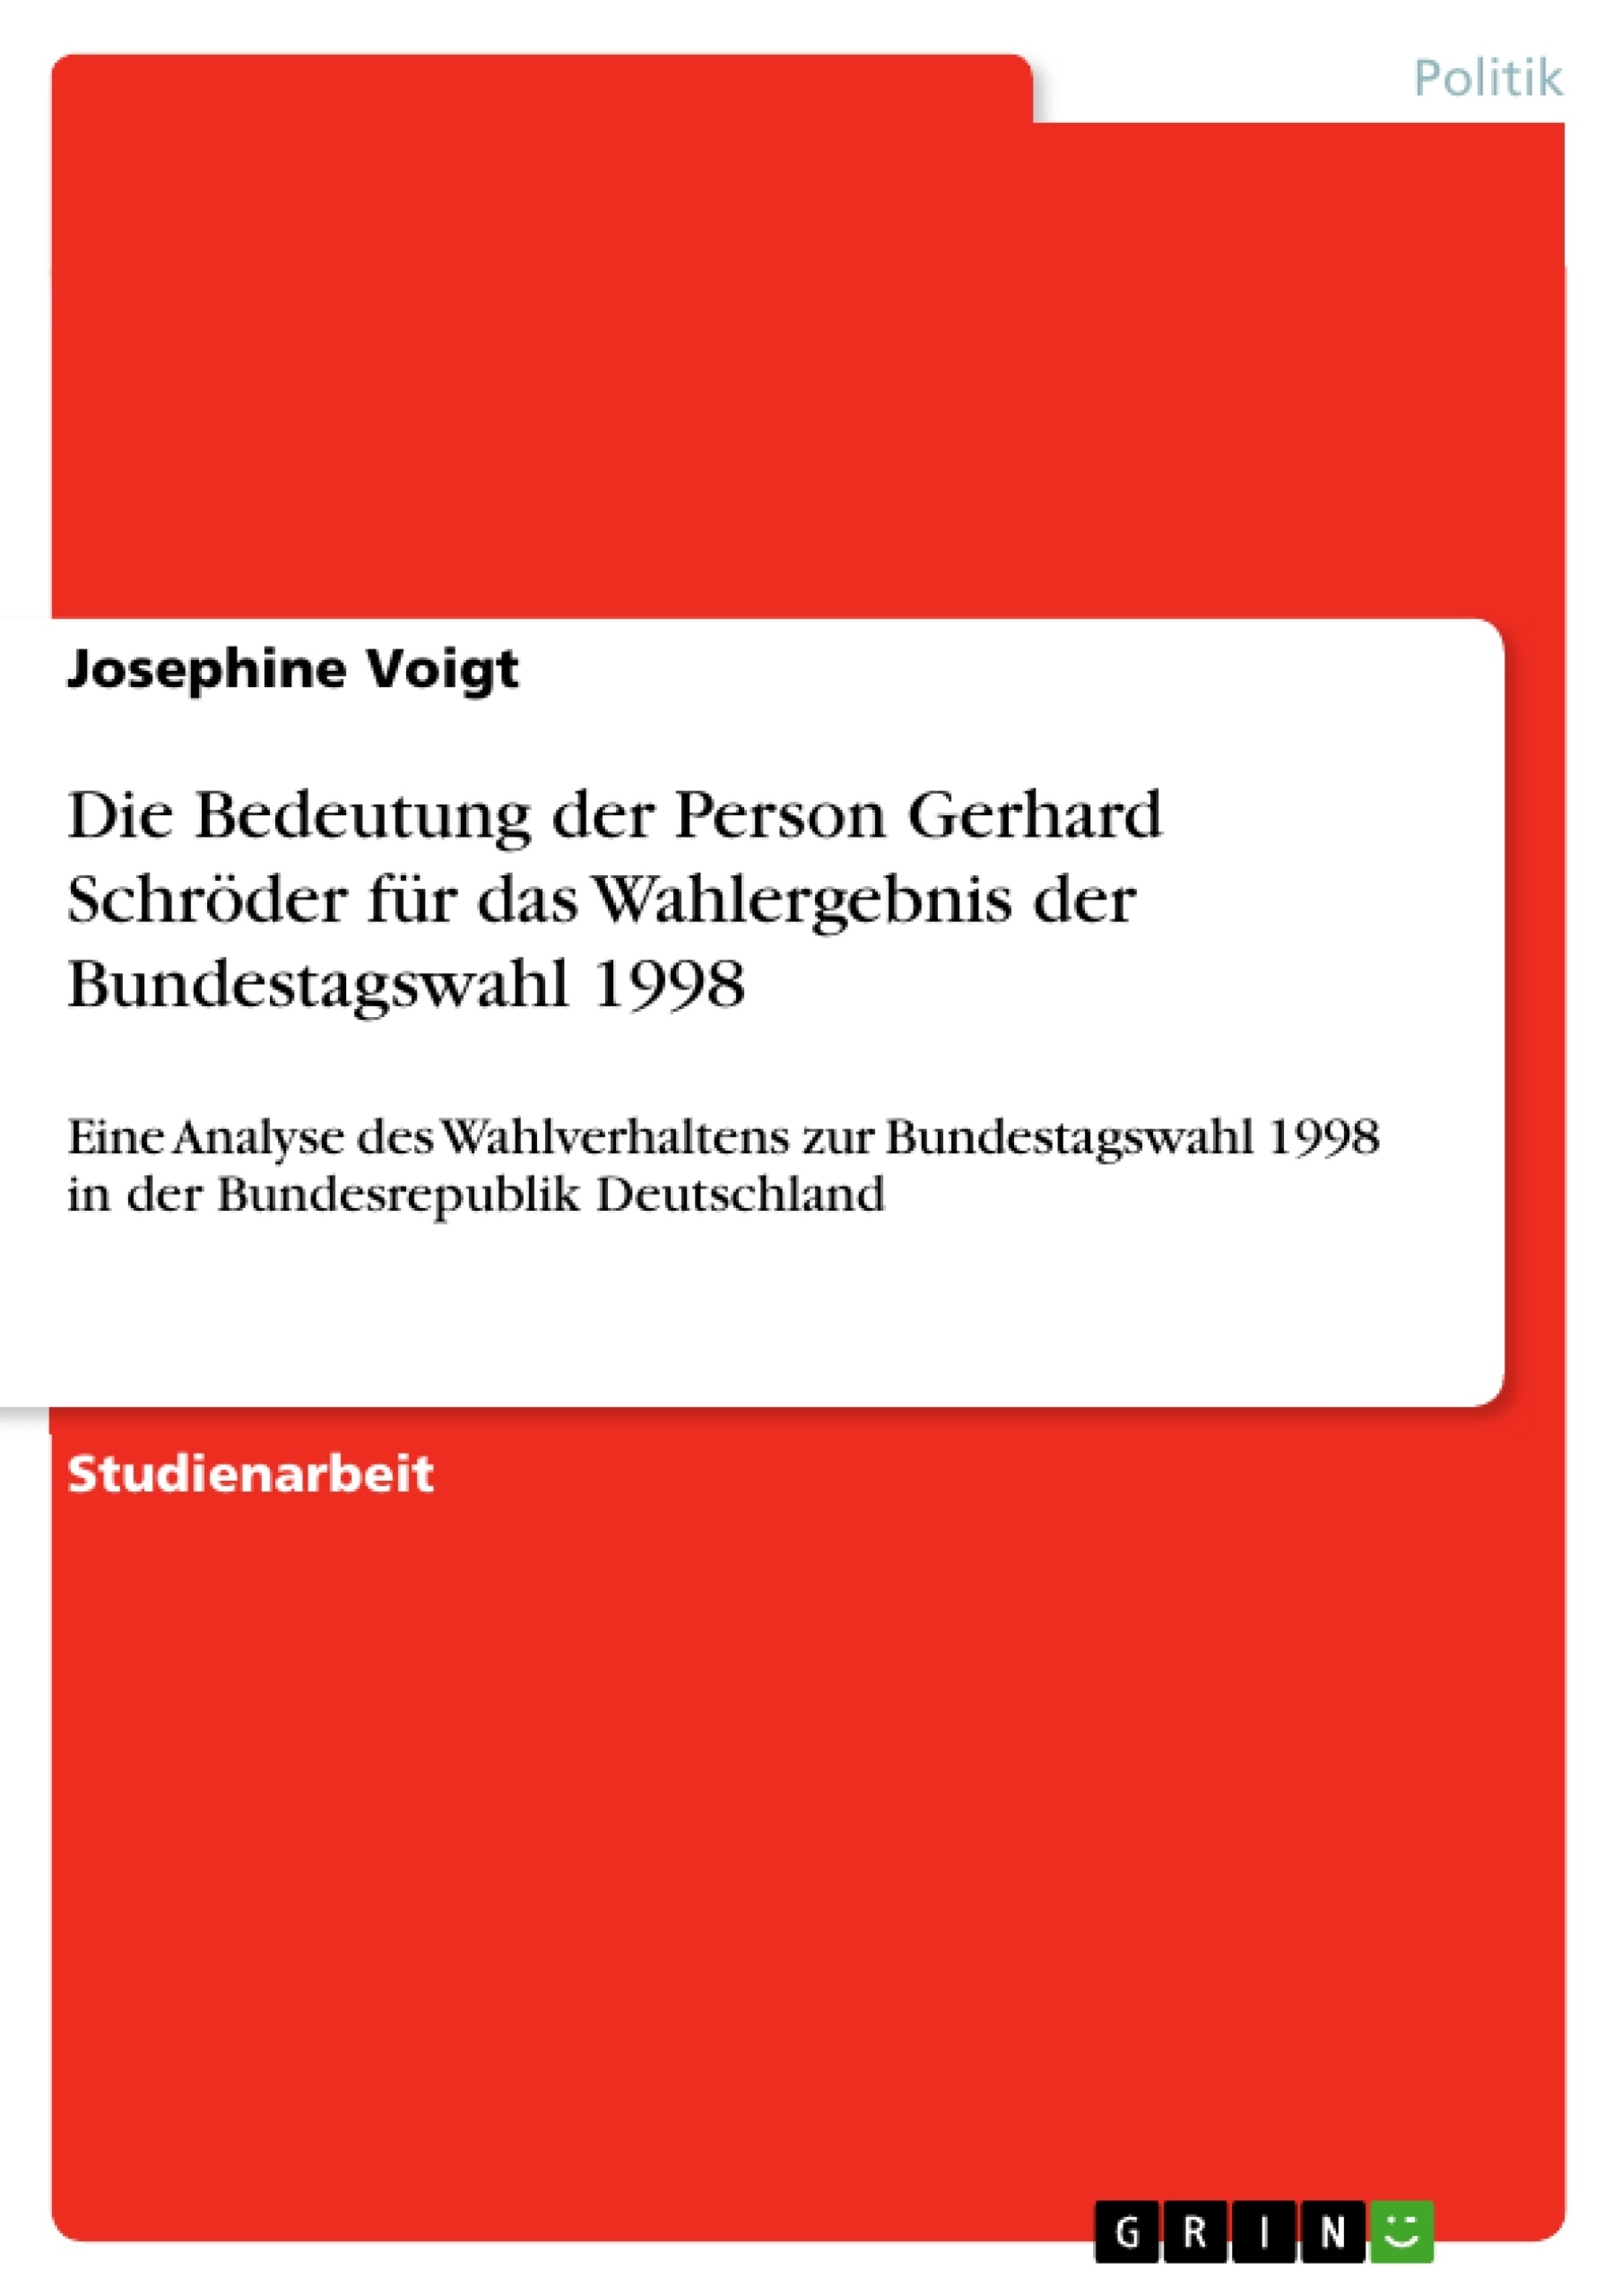 Title: Die Bedeutung der Person Gerhard Schröder für das Wahlergebnis der Bundestagswahl 1998